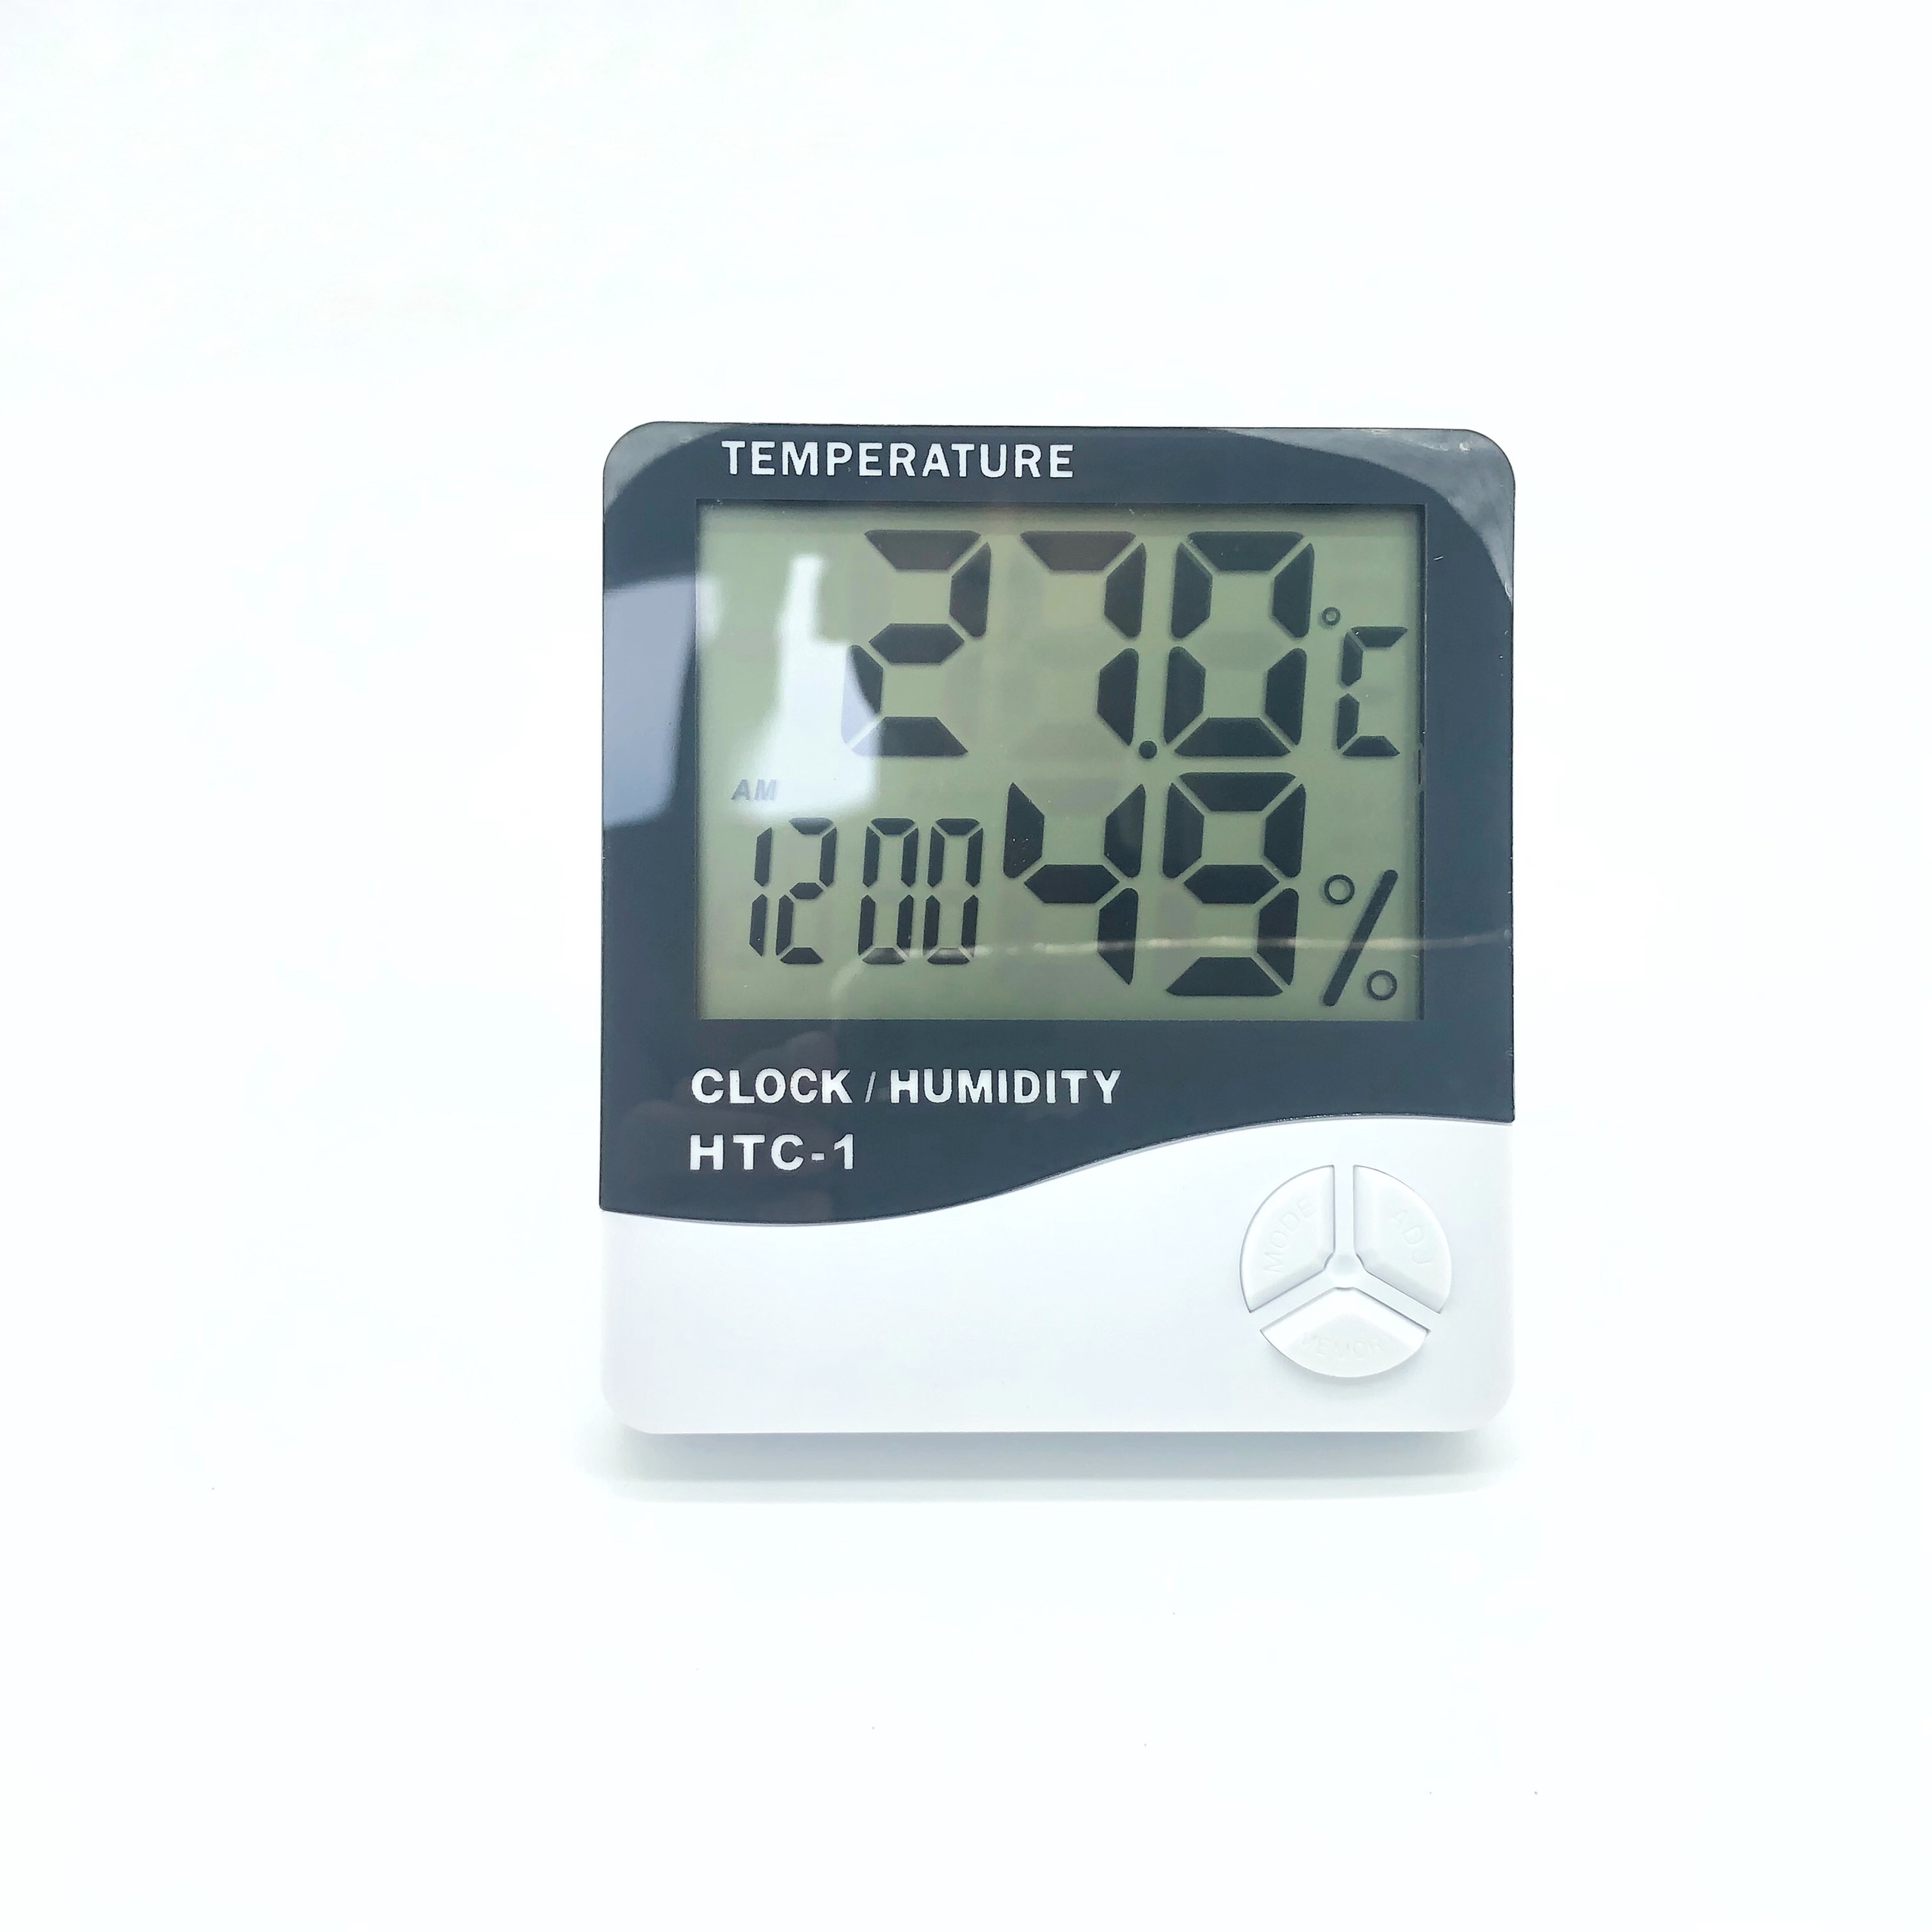 Đồng hồ báo thức có nhiệt kế và độ ẩm cho gia đình, trang trí bàn làm việc